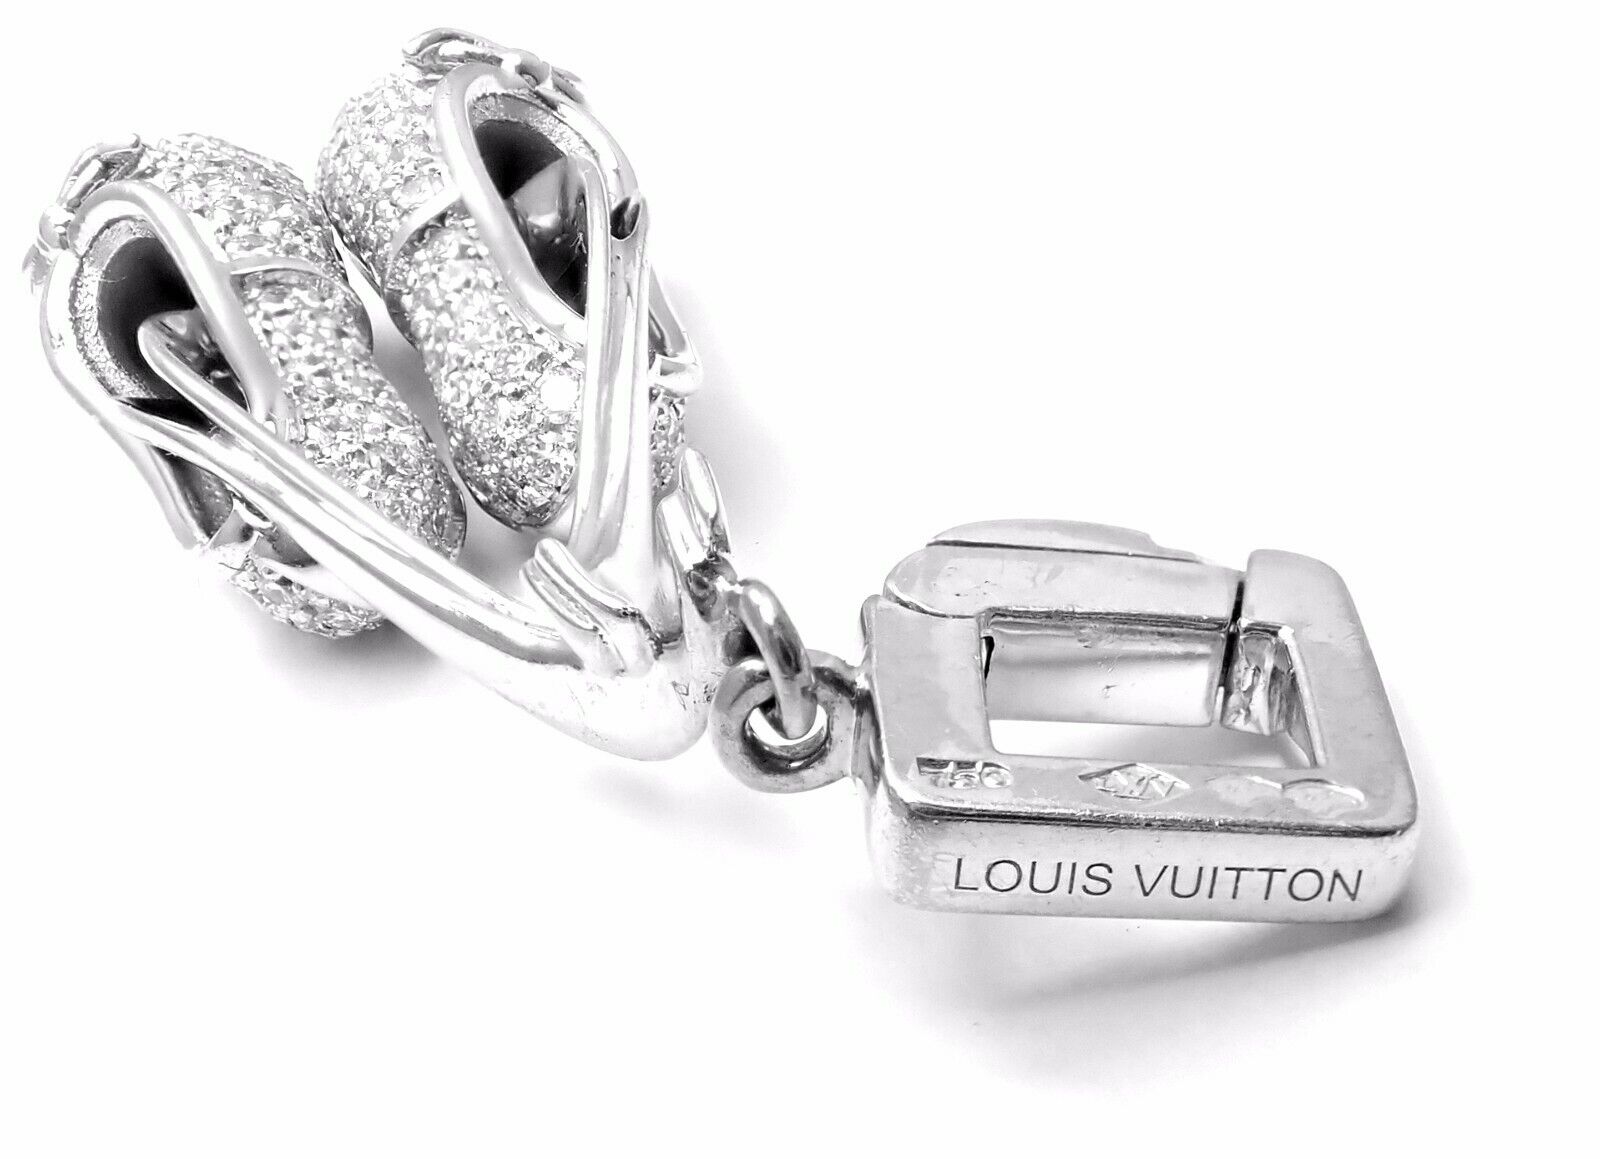 Louis Vuitton Empreinte Bangle, White Gold and Diamonds Grey. Size S